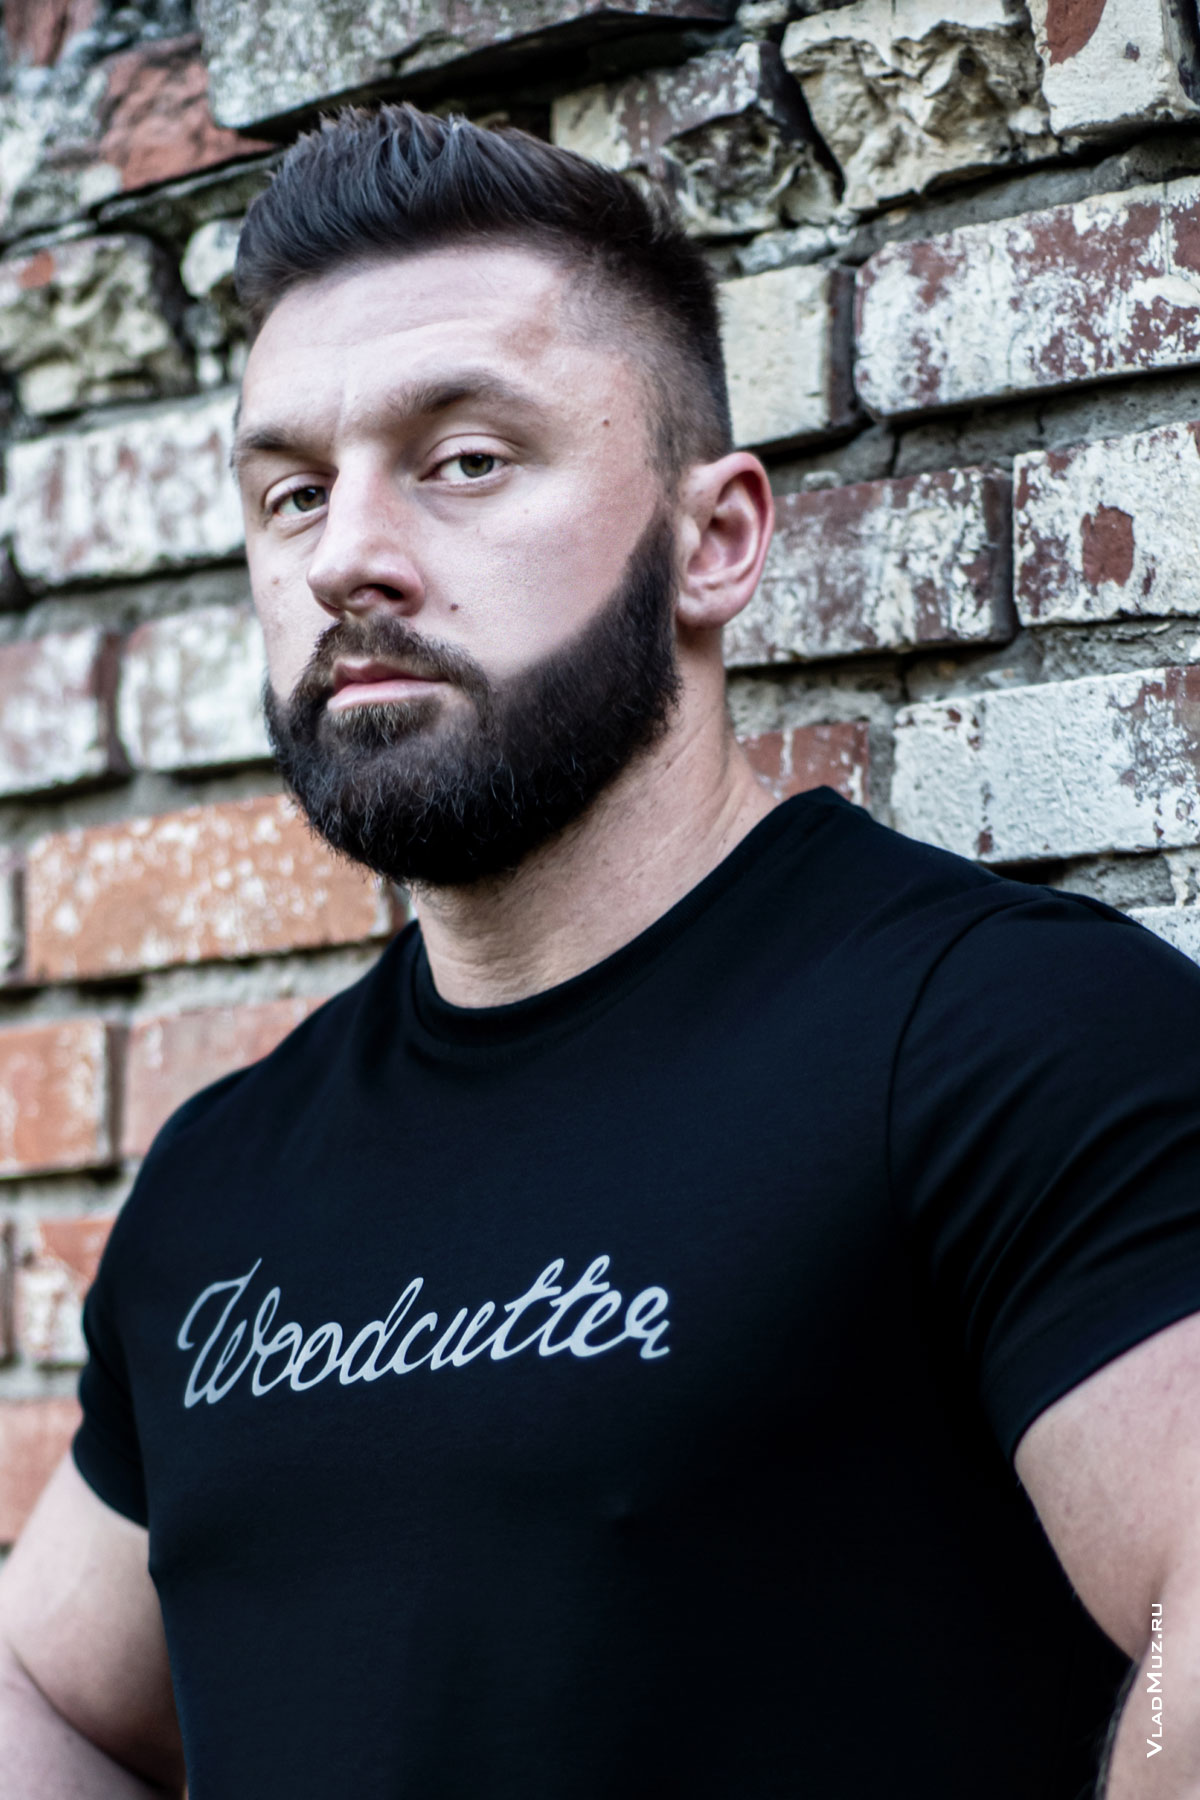 Грудной рекламный фотопортрет мужчины у кирпичной стены в черной футболке Woodcutter